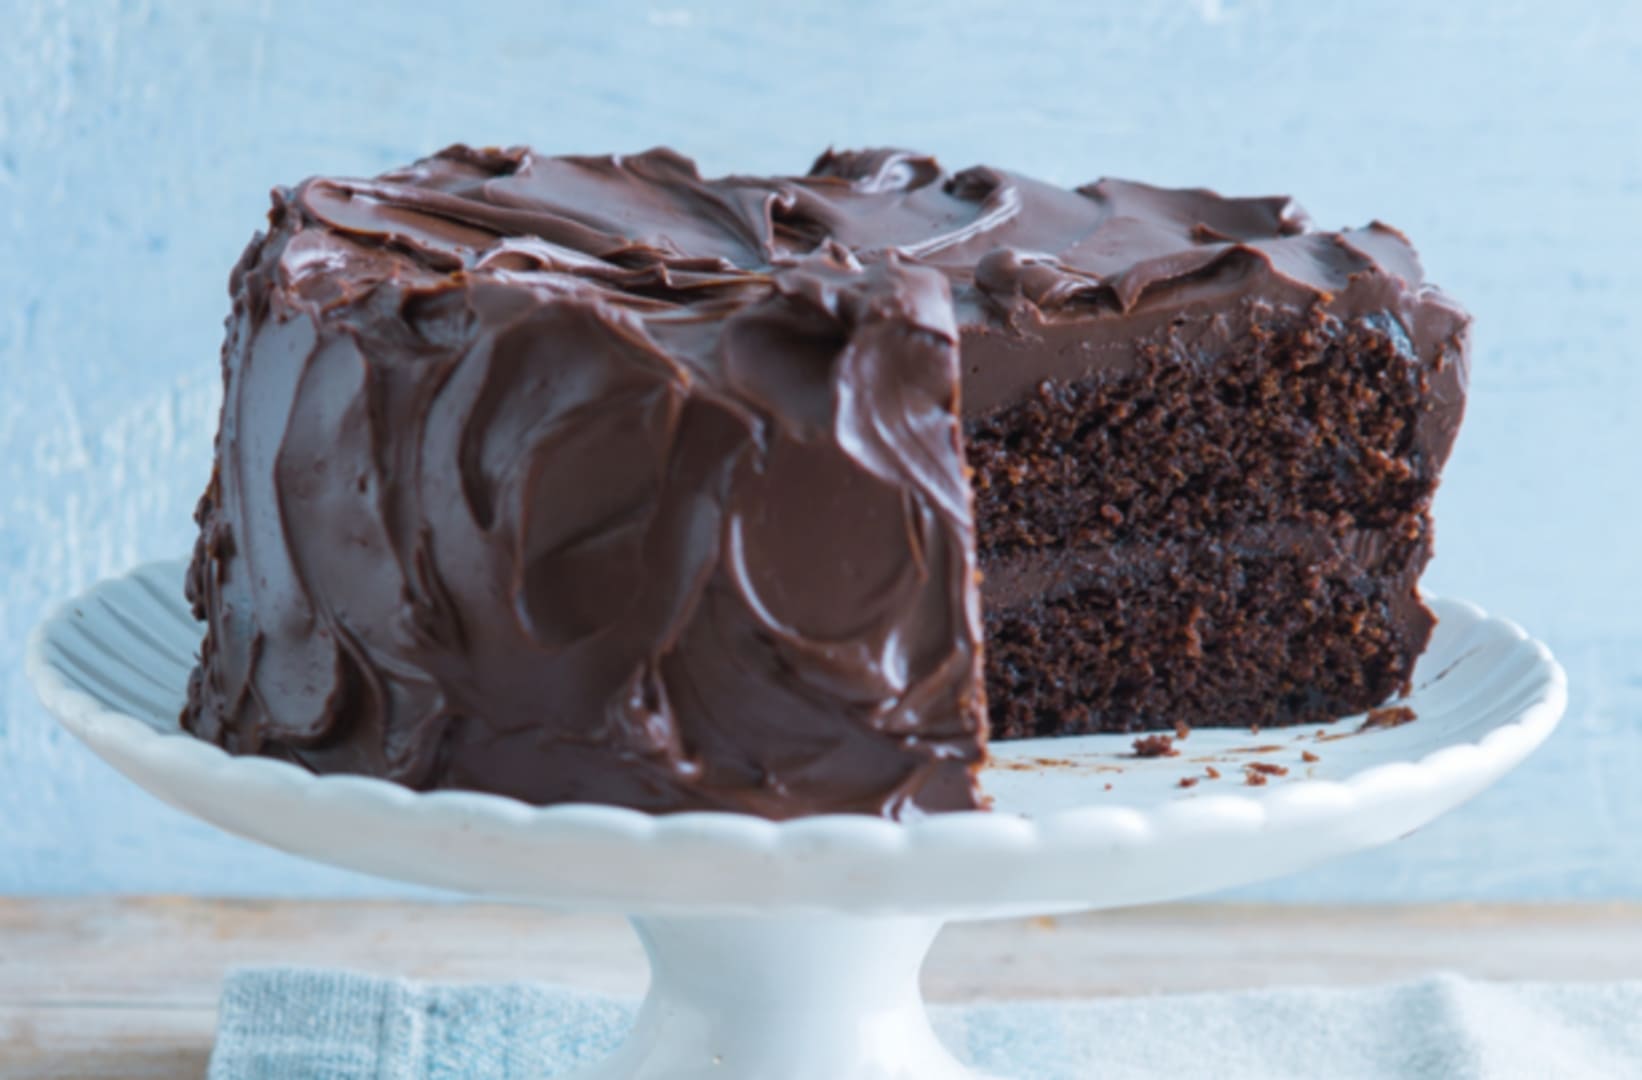 طريقة تحضير الكيكة الأسفنجية بالشوكولاتة جربيها ومش هتبطلي تعمليها لأطفالك